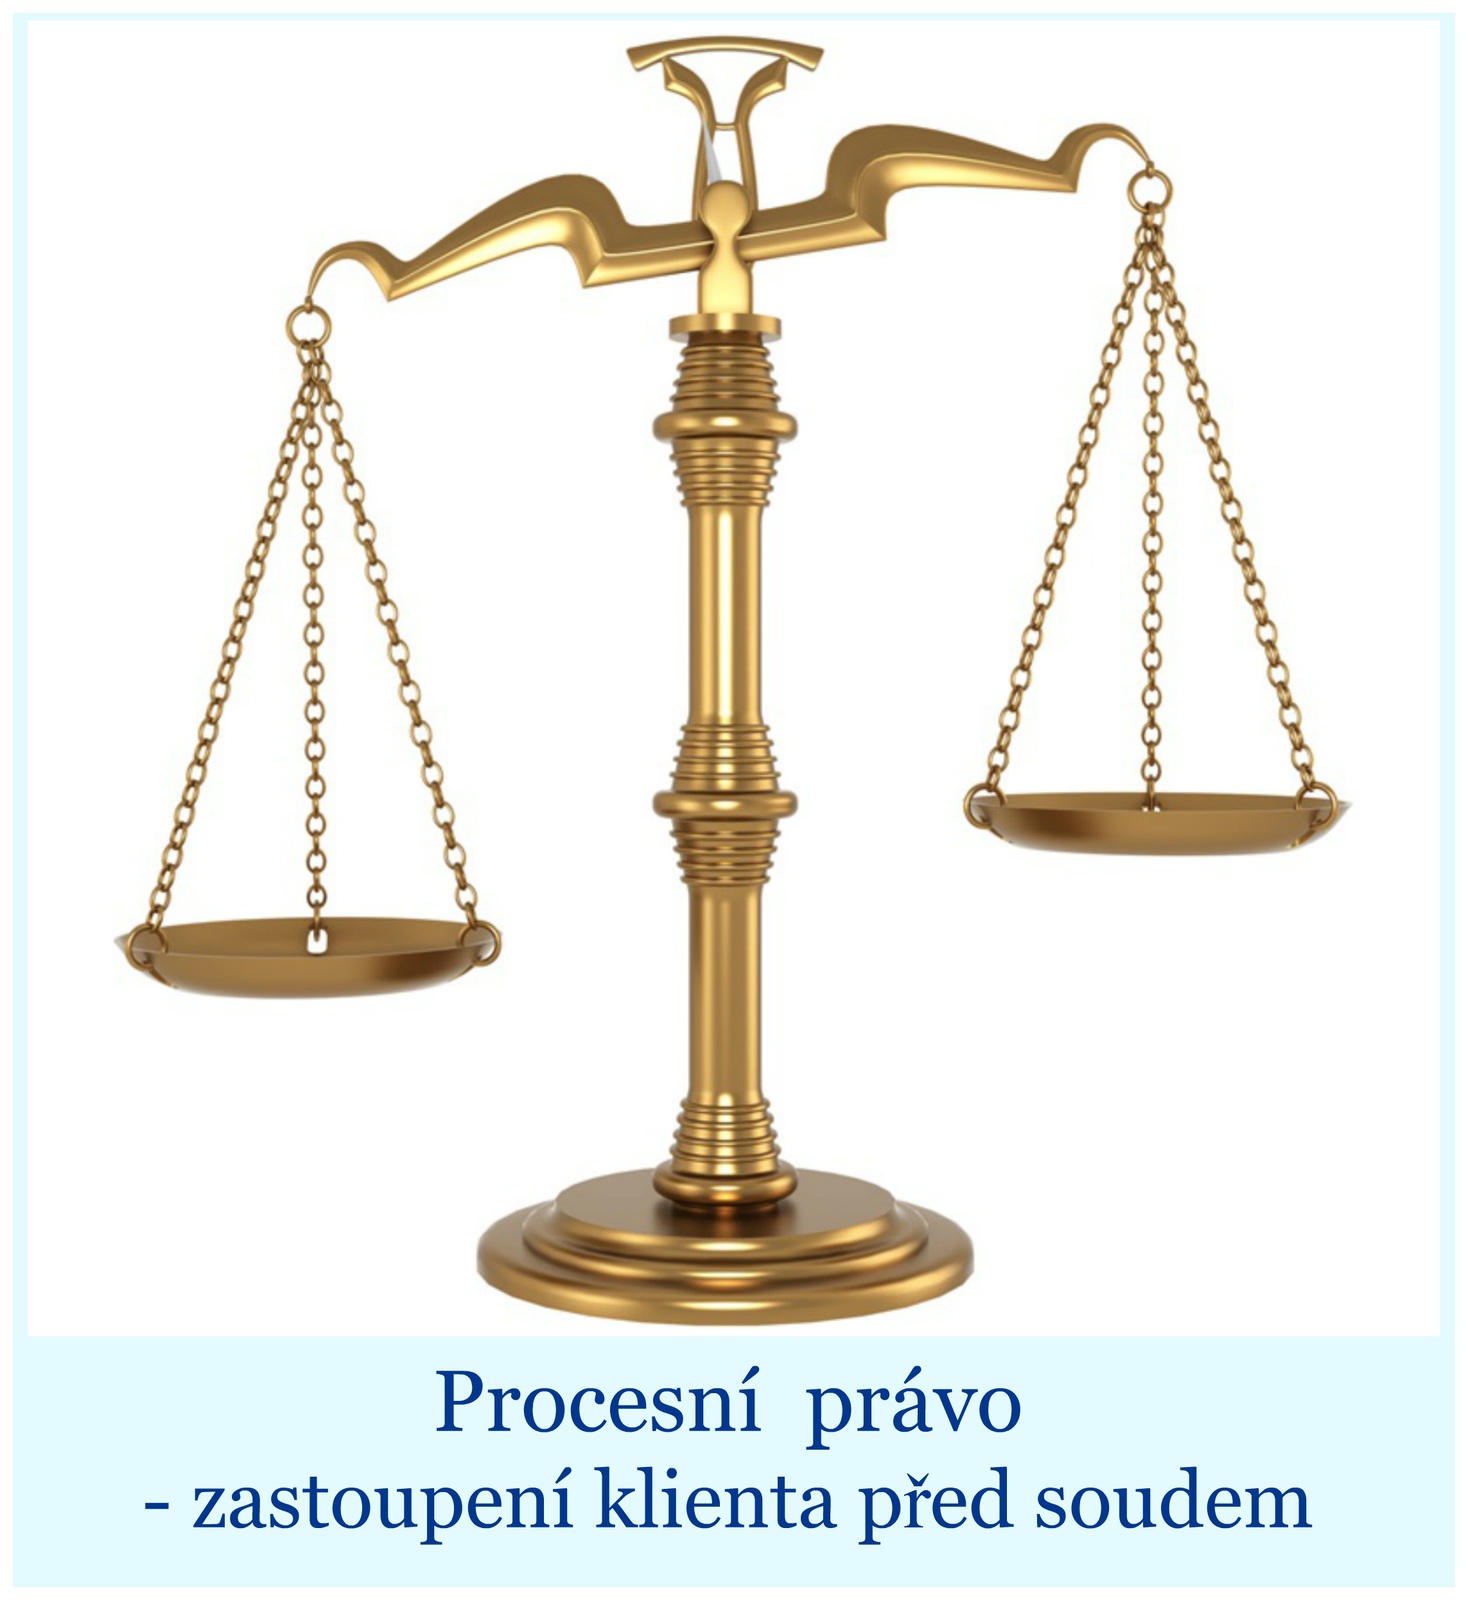 Procesní právo | Procedural Law